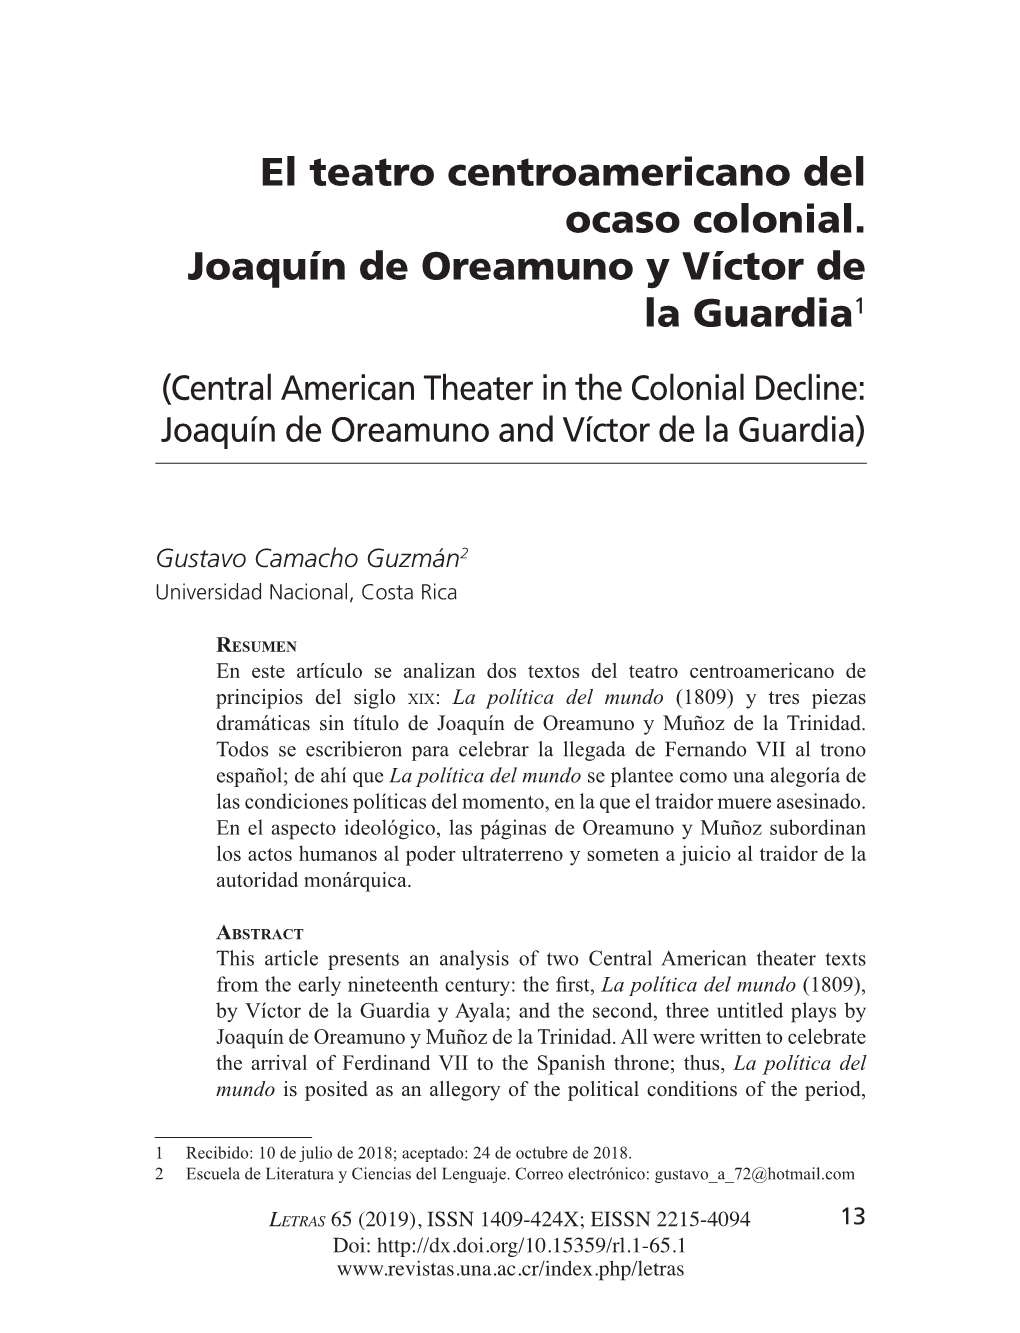 El Teatro Centroamericano Del Ocaso Colonial. Joaquín De Oreamuno Y Víctor De La Guardia1